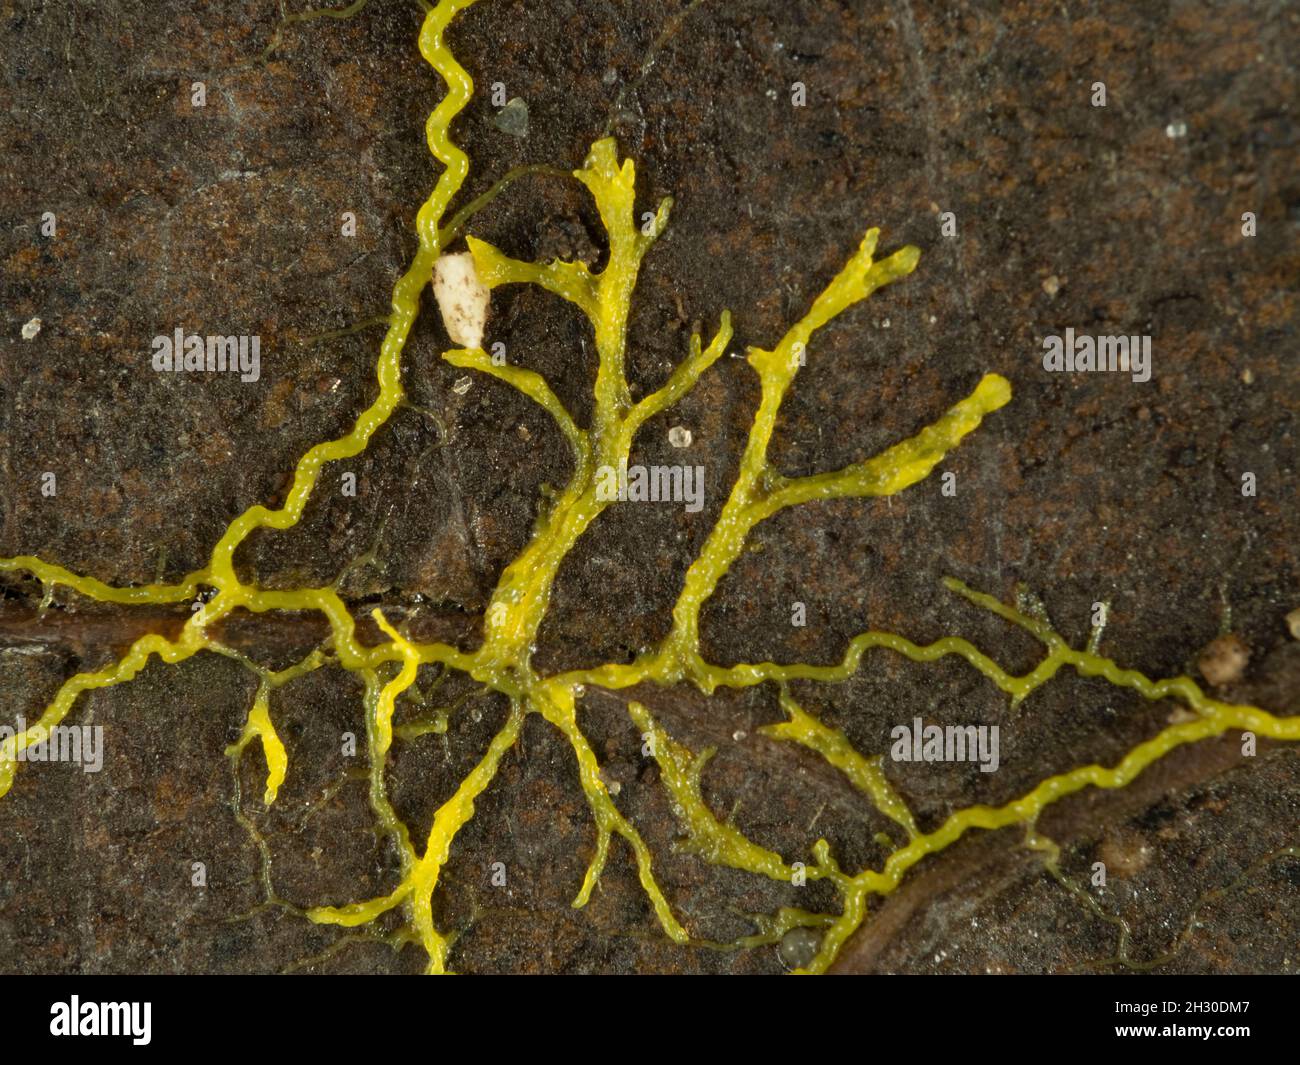 Primo piano della muffa gialla di lime o della muffa di lime (Physarum policephalum) che striscia attraverso una foglia morta in cerca di cibo Foto Stock